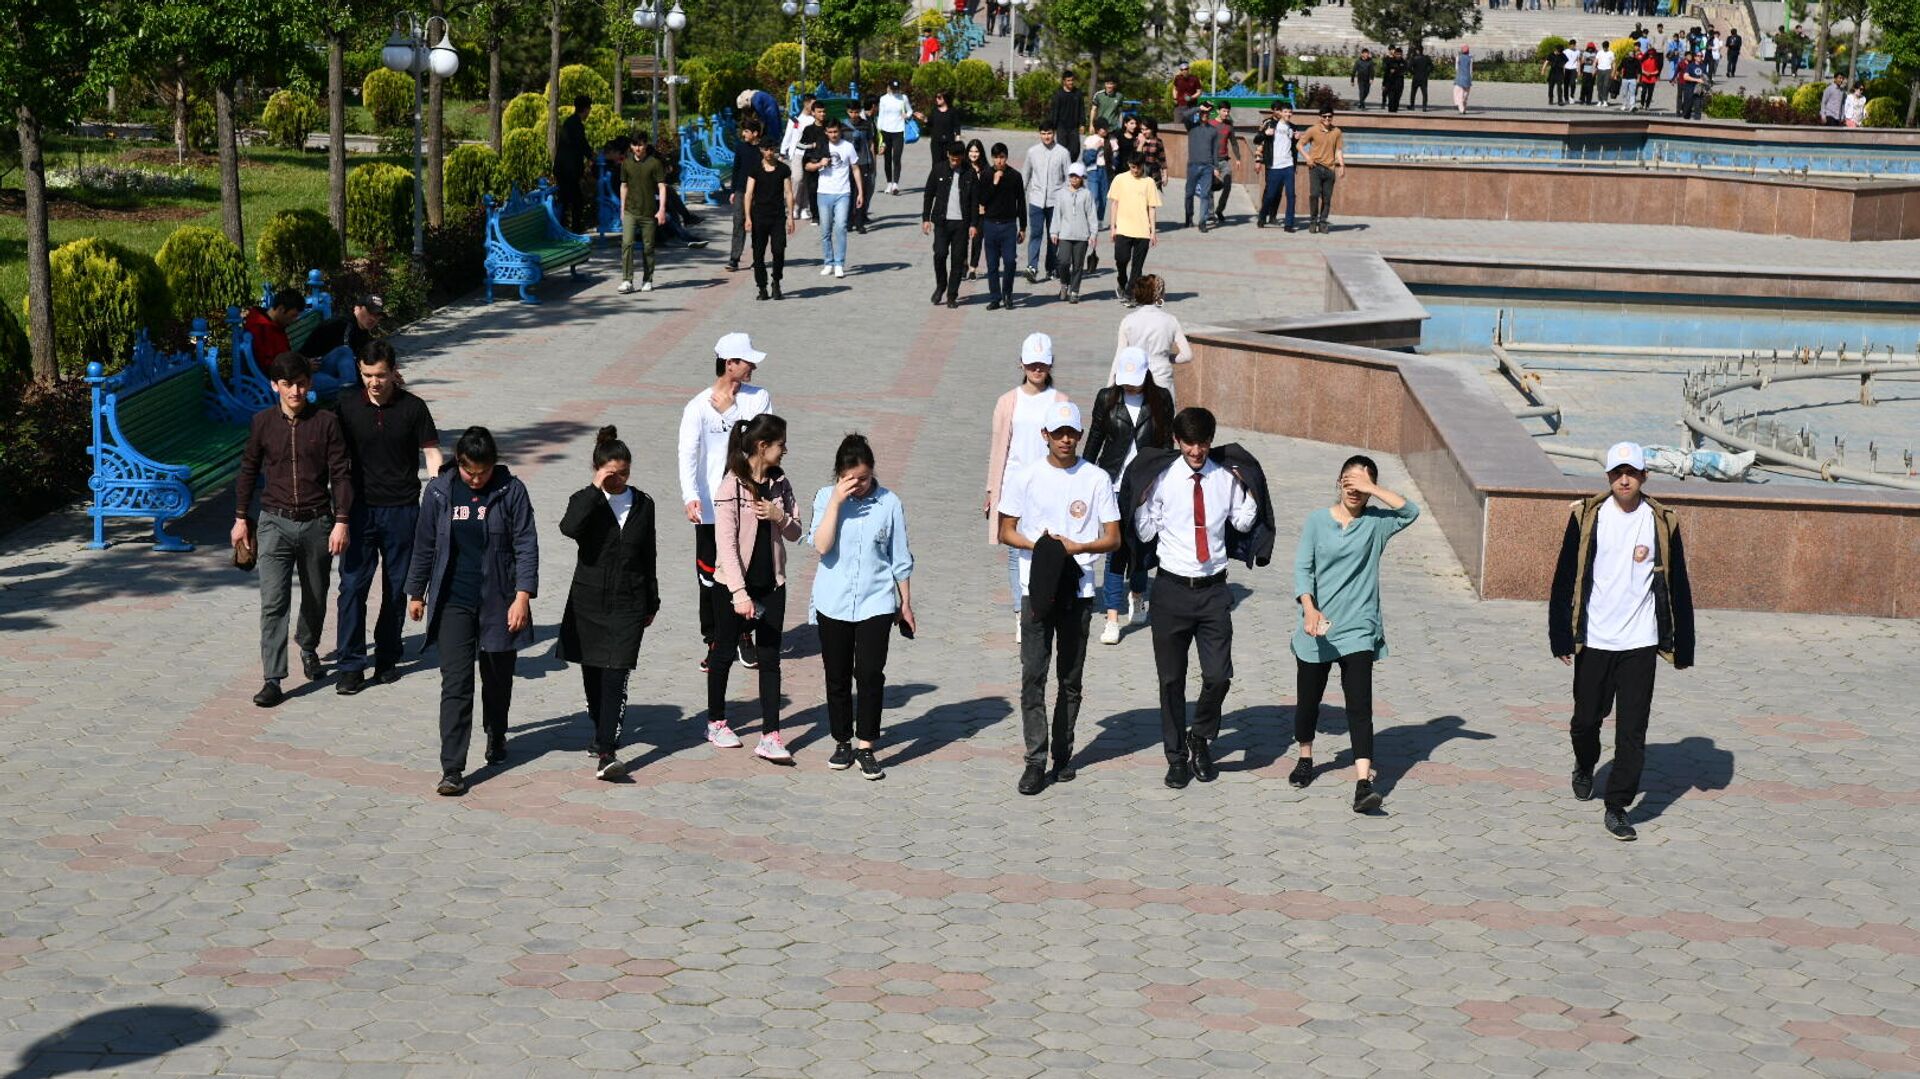 Молодежь гуляет на День города в Душанбе - Sputnik Таджикистан, 1920, 17.06.2021